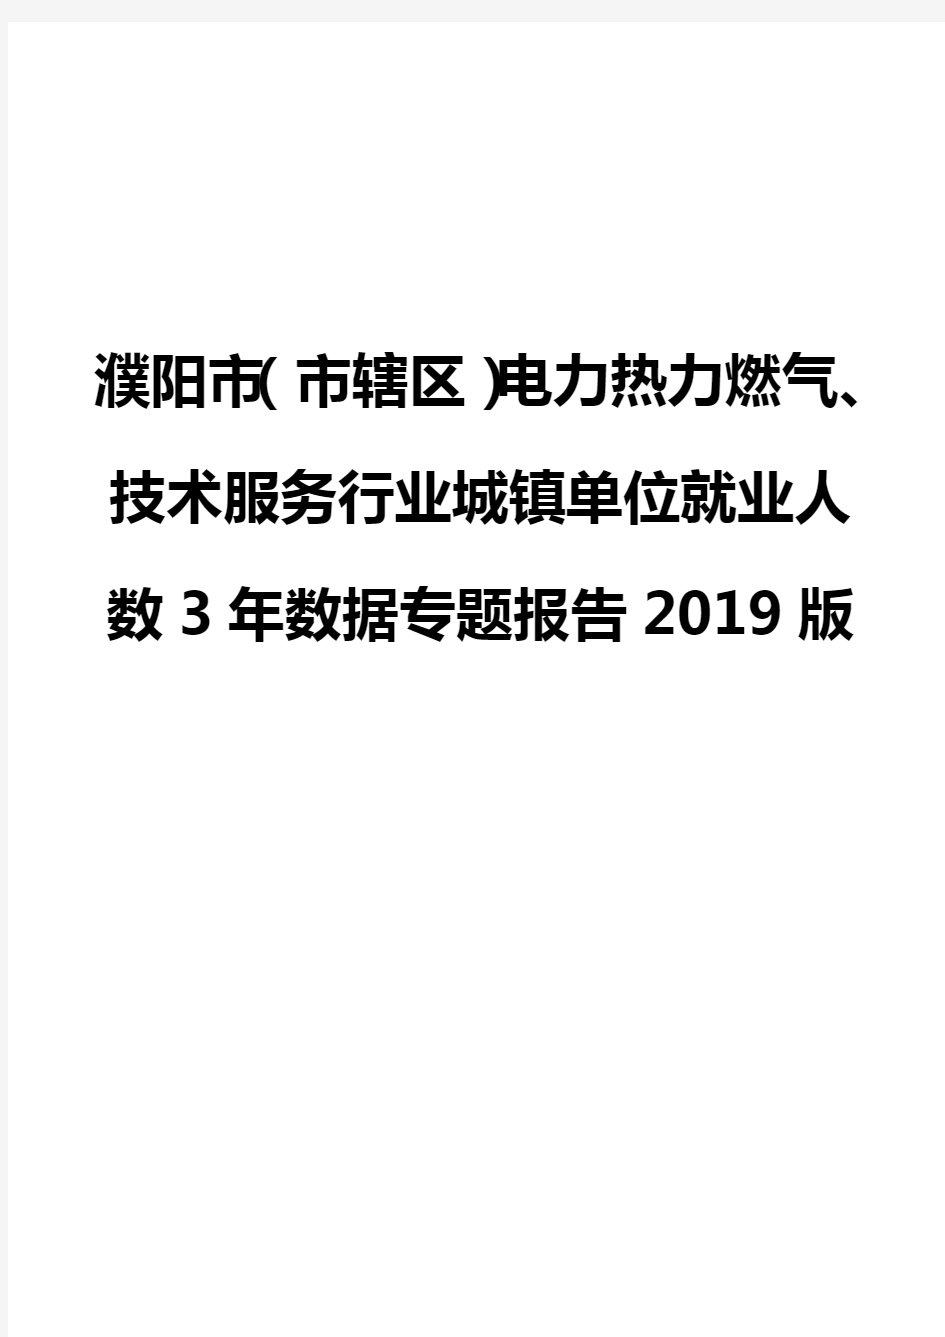 濮阳市(市辖区)电力热力燃气、技术服务行业城镇单位就业人数3年数据专题报告2019版